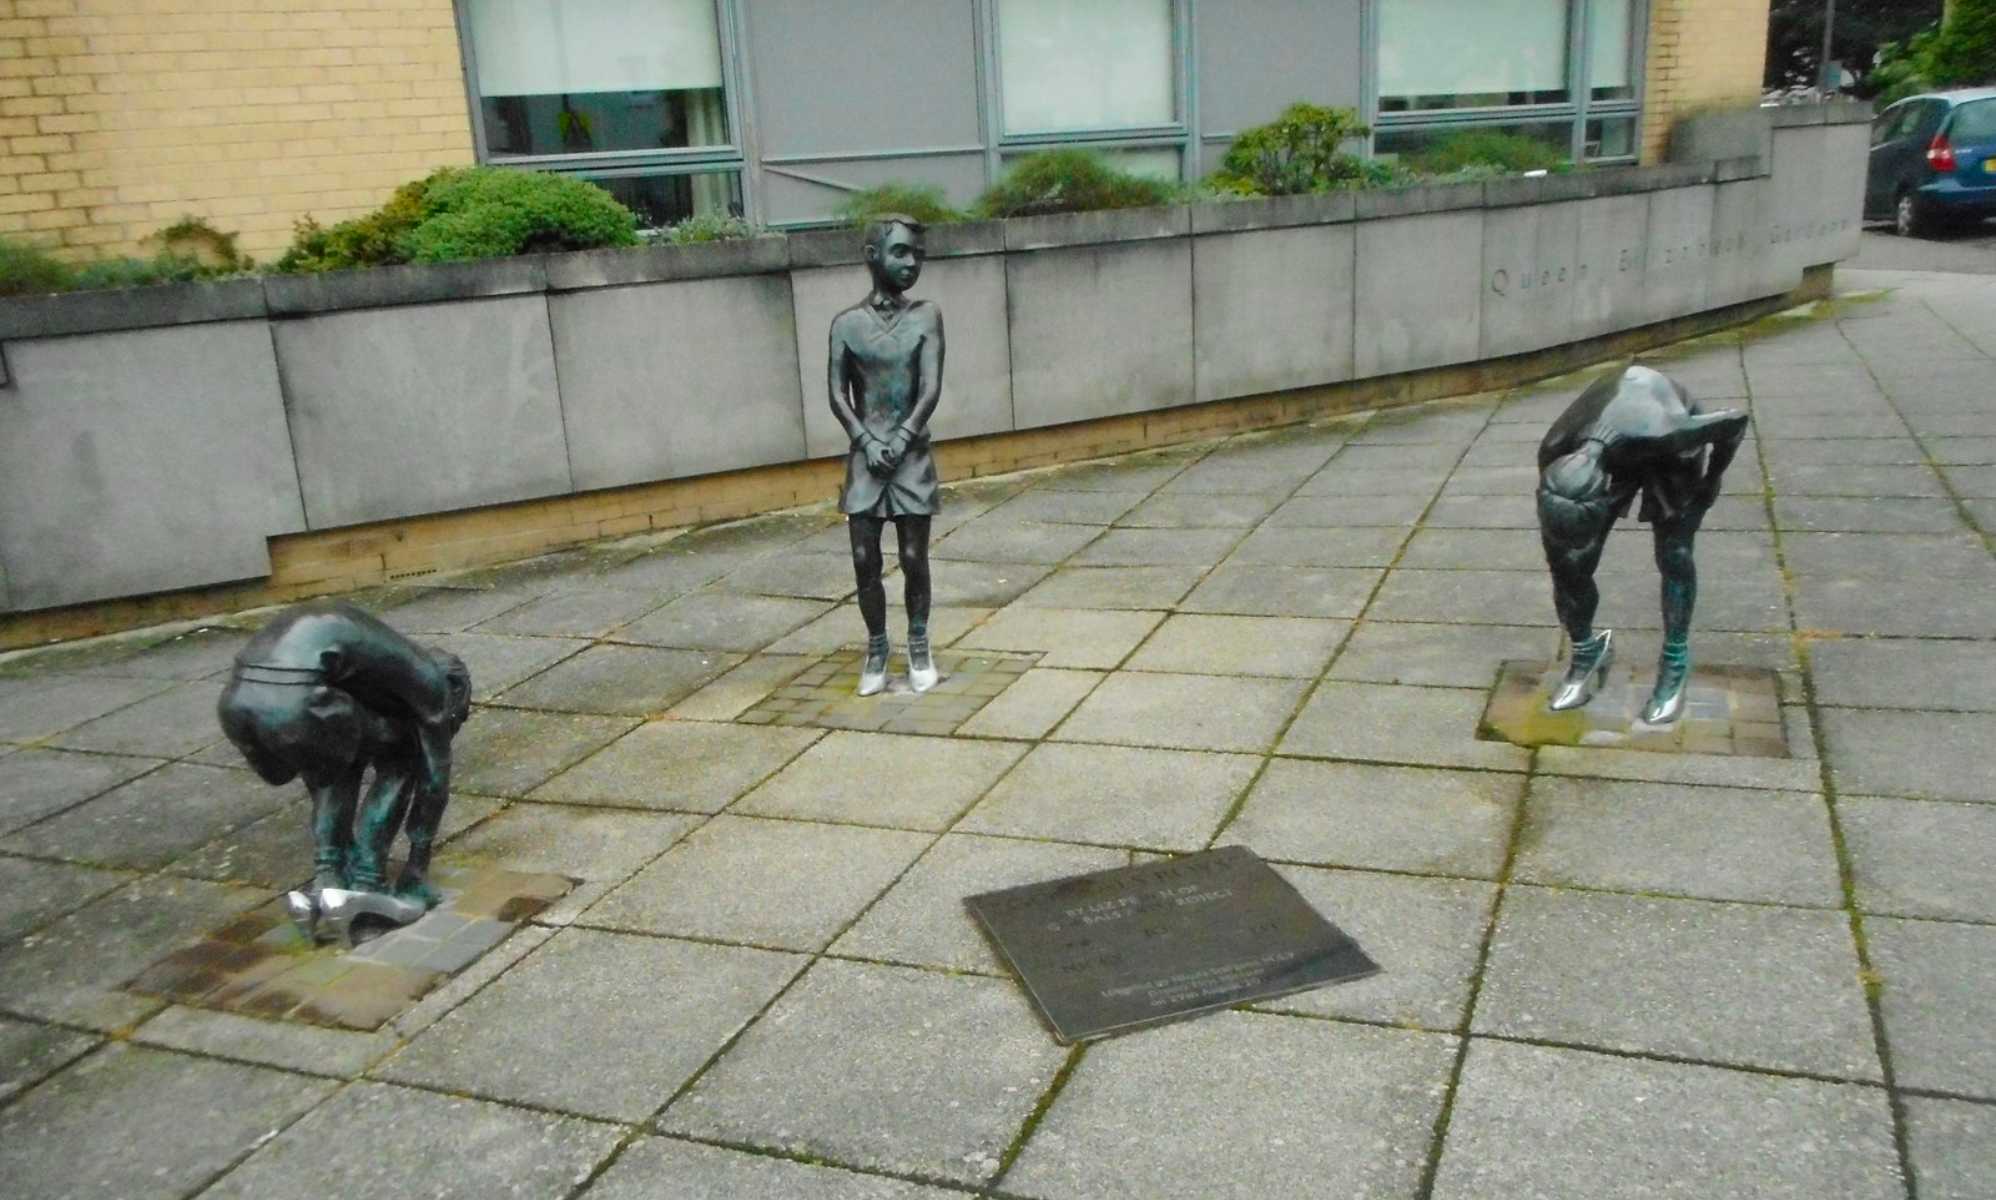 Roban dos esculturas de niños jugando con tacones en Glasgow